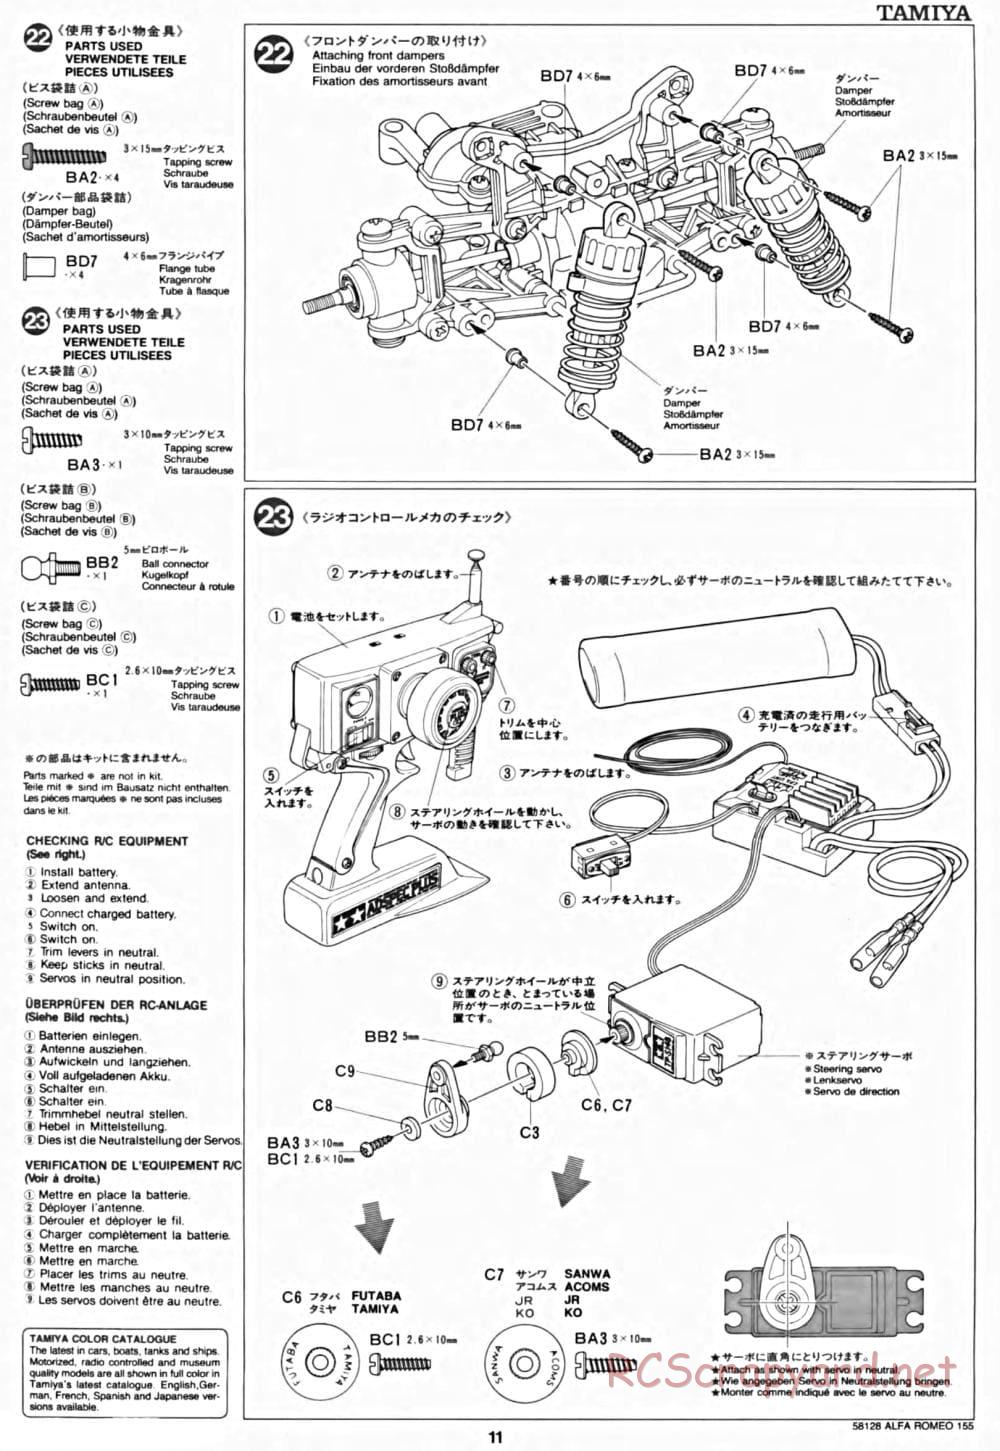 Tamiya - Alfa Romeo 155 V6 TI - TA-02 Chassis - Manual - Page 11